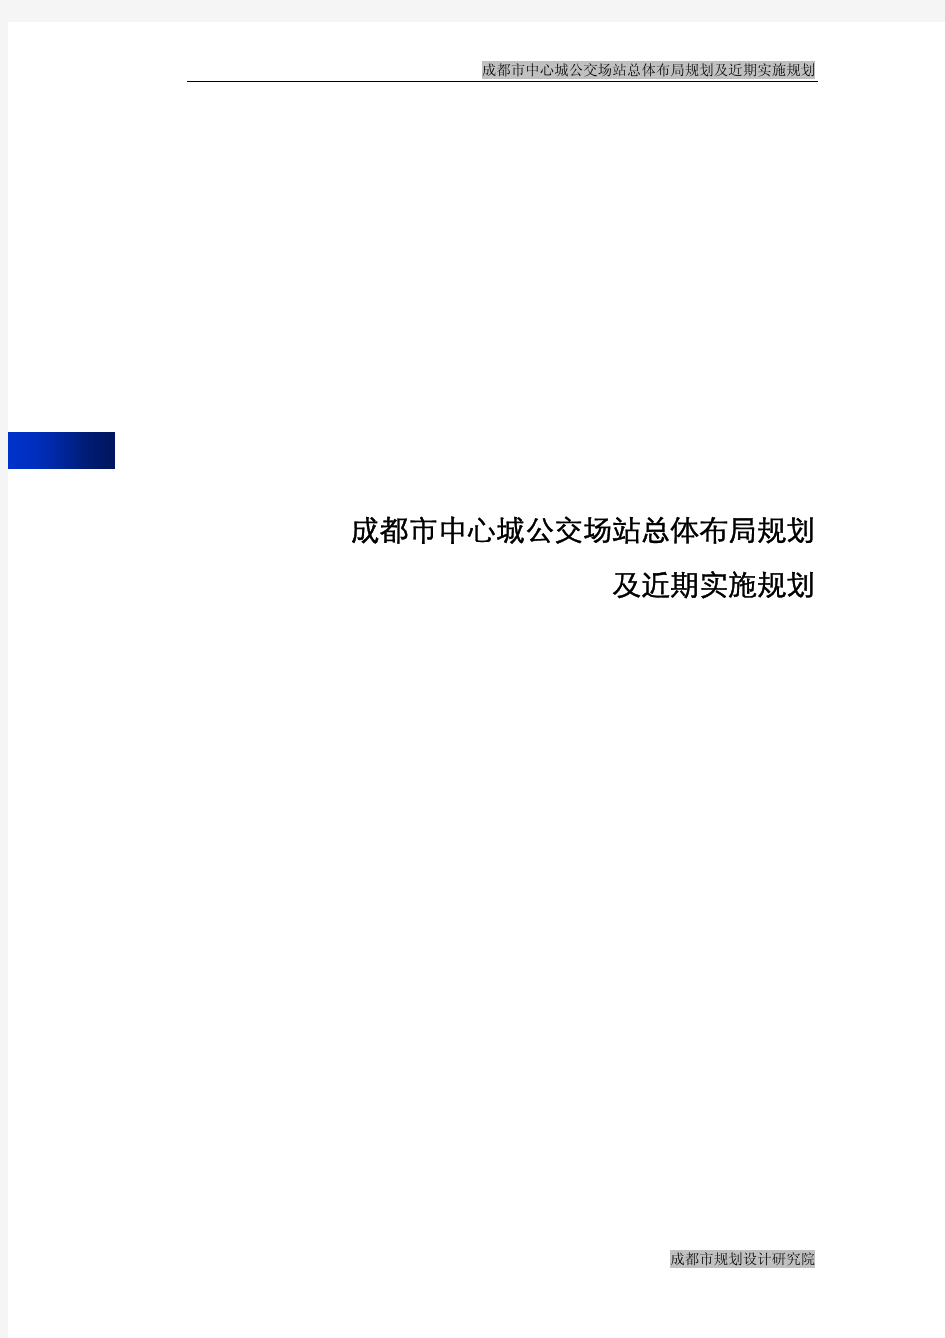 成都市中心城公交场站总体布局规划及近期实施规划2009-2020